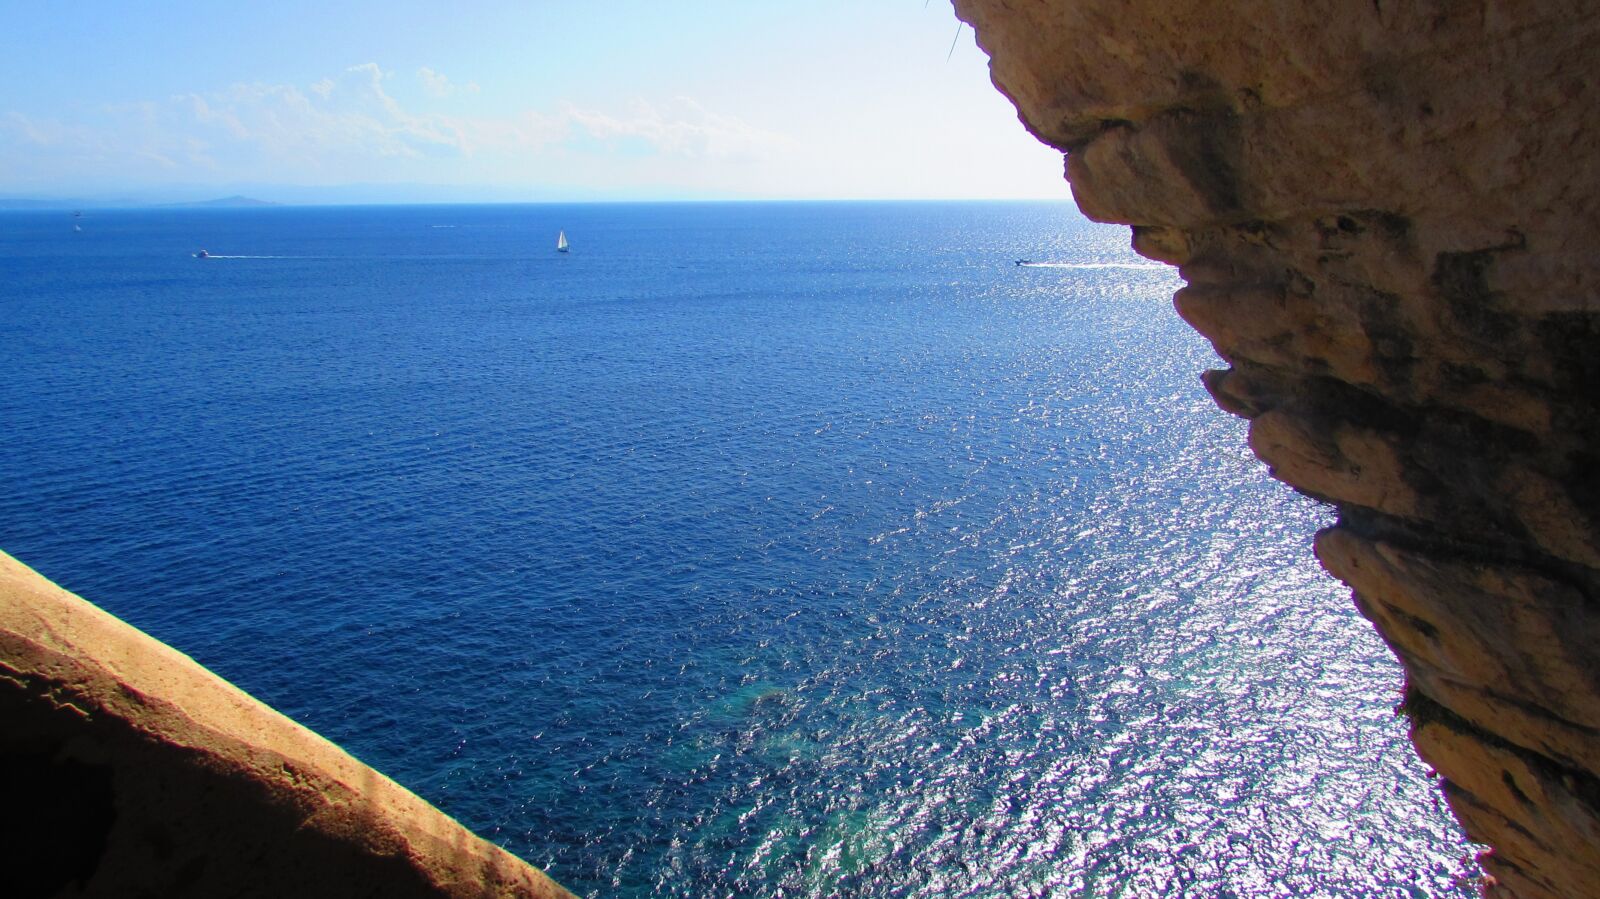 Canon PowerShot SX510 HS sample photo. Corsican, bonifacio, mediterranean sea photography